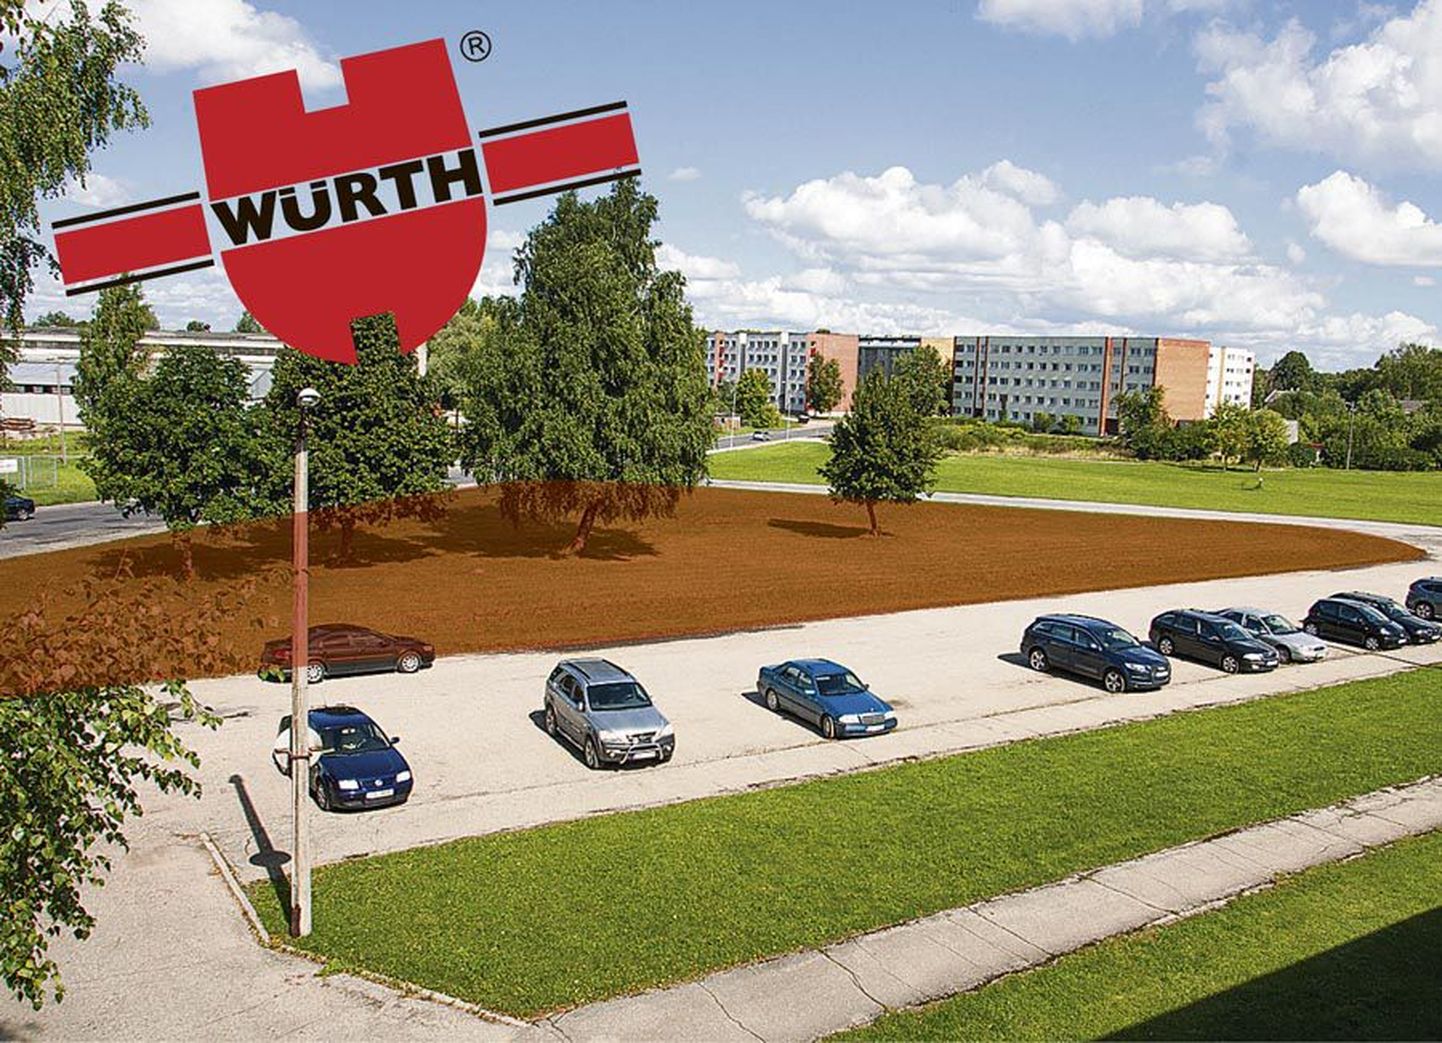 Kui algul küsis Würth uue kaupluse jaoks maatükki linnalt, siis nüüdseks on firma selleks ostnud eraomanikult trükikoja ees oleva krundi.